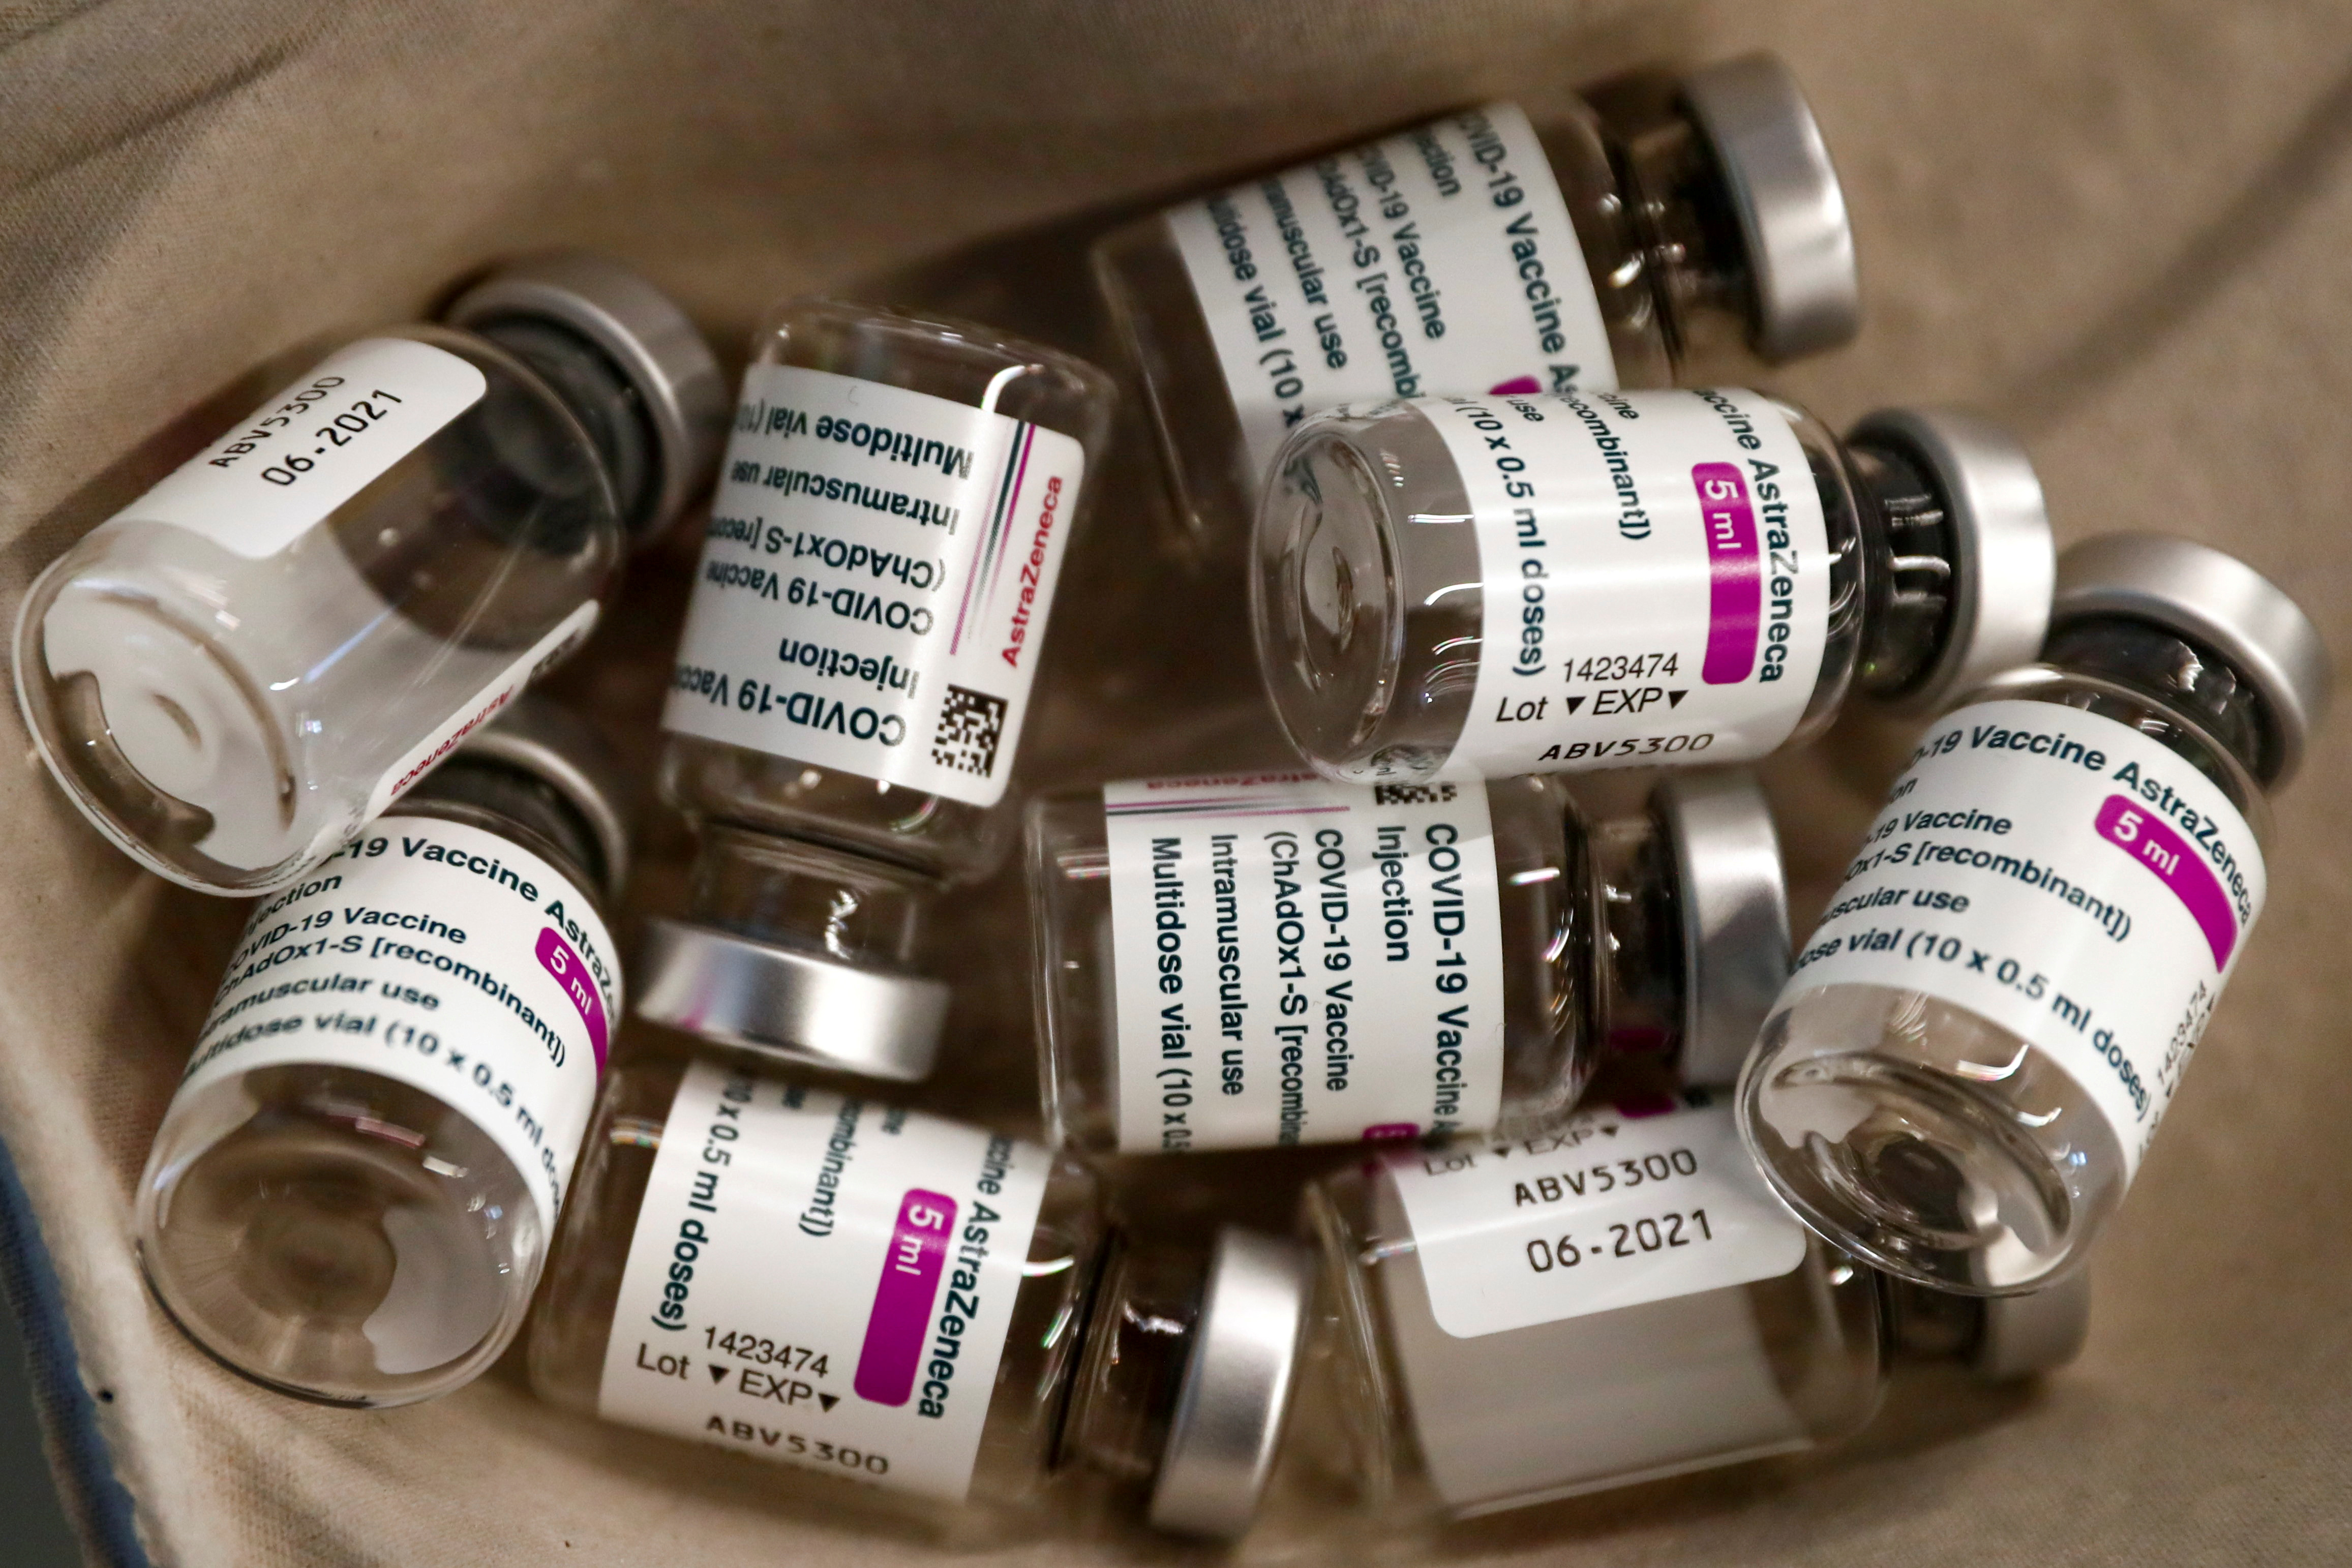 Empty vials of AstraZeneca COVID-19 vaccine are seen in a tray